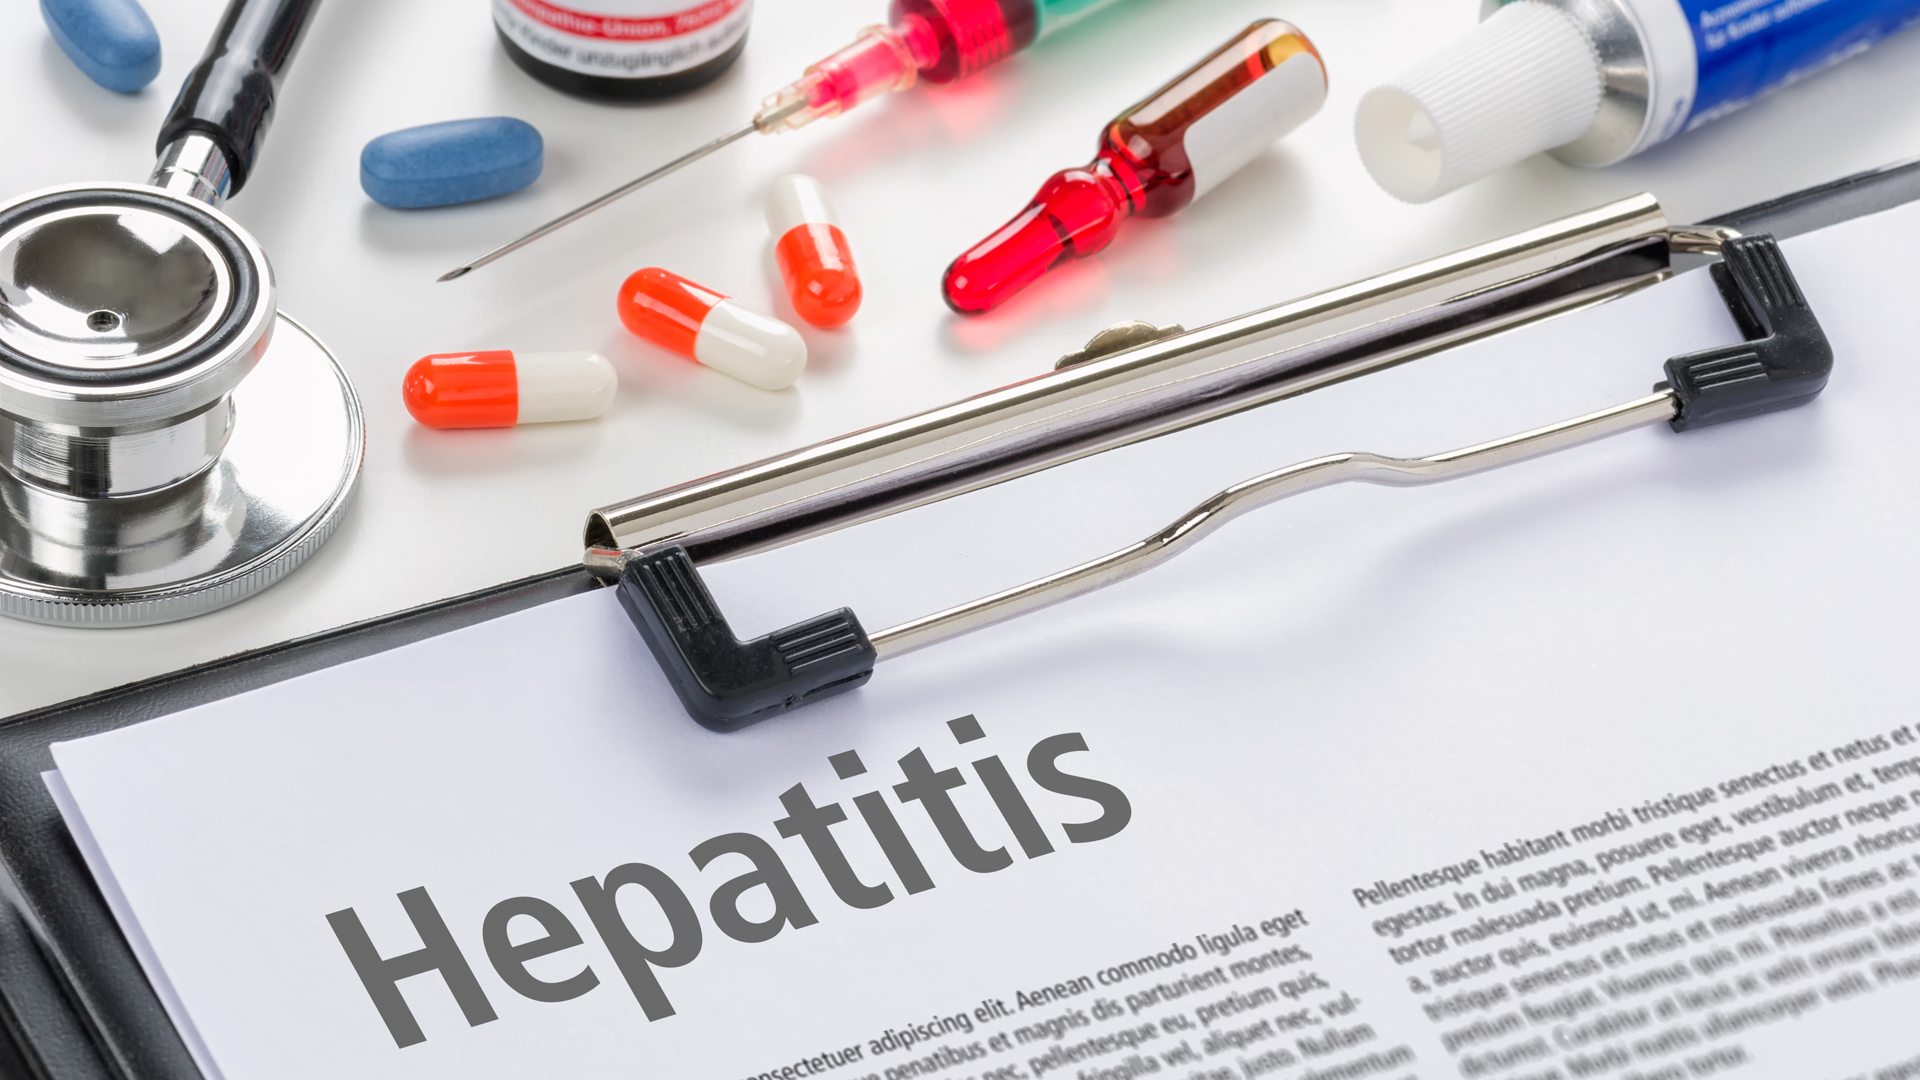 Hepatitis: cómo es la campaña para testearse y vacunarse contra la enfermedad